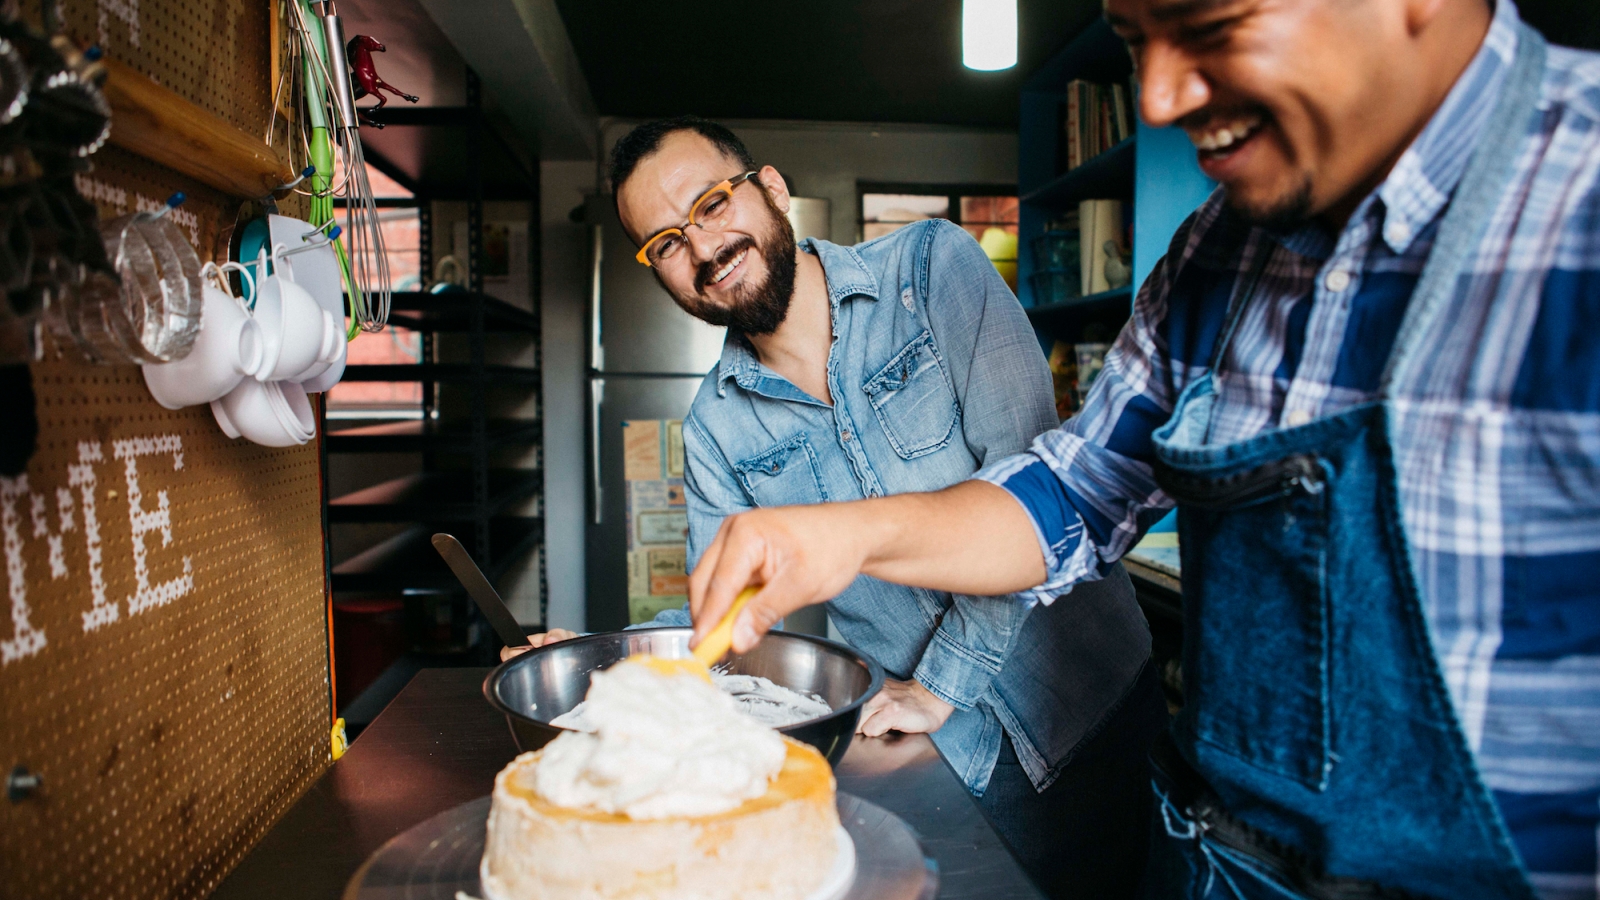 Un voyageur fait le glaçage d'un gâteau pendant que l'hôte regarde et sourit